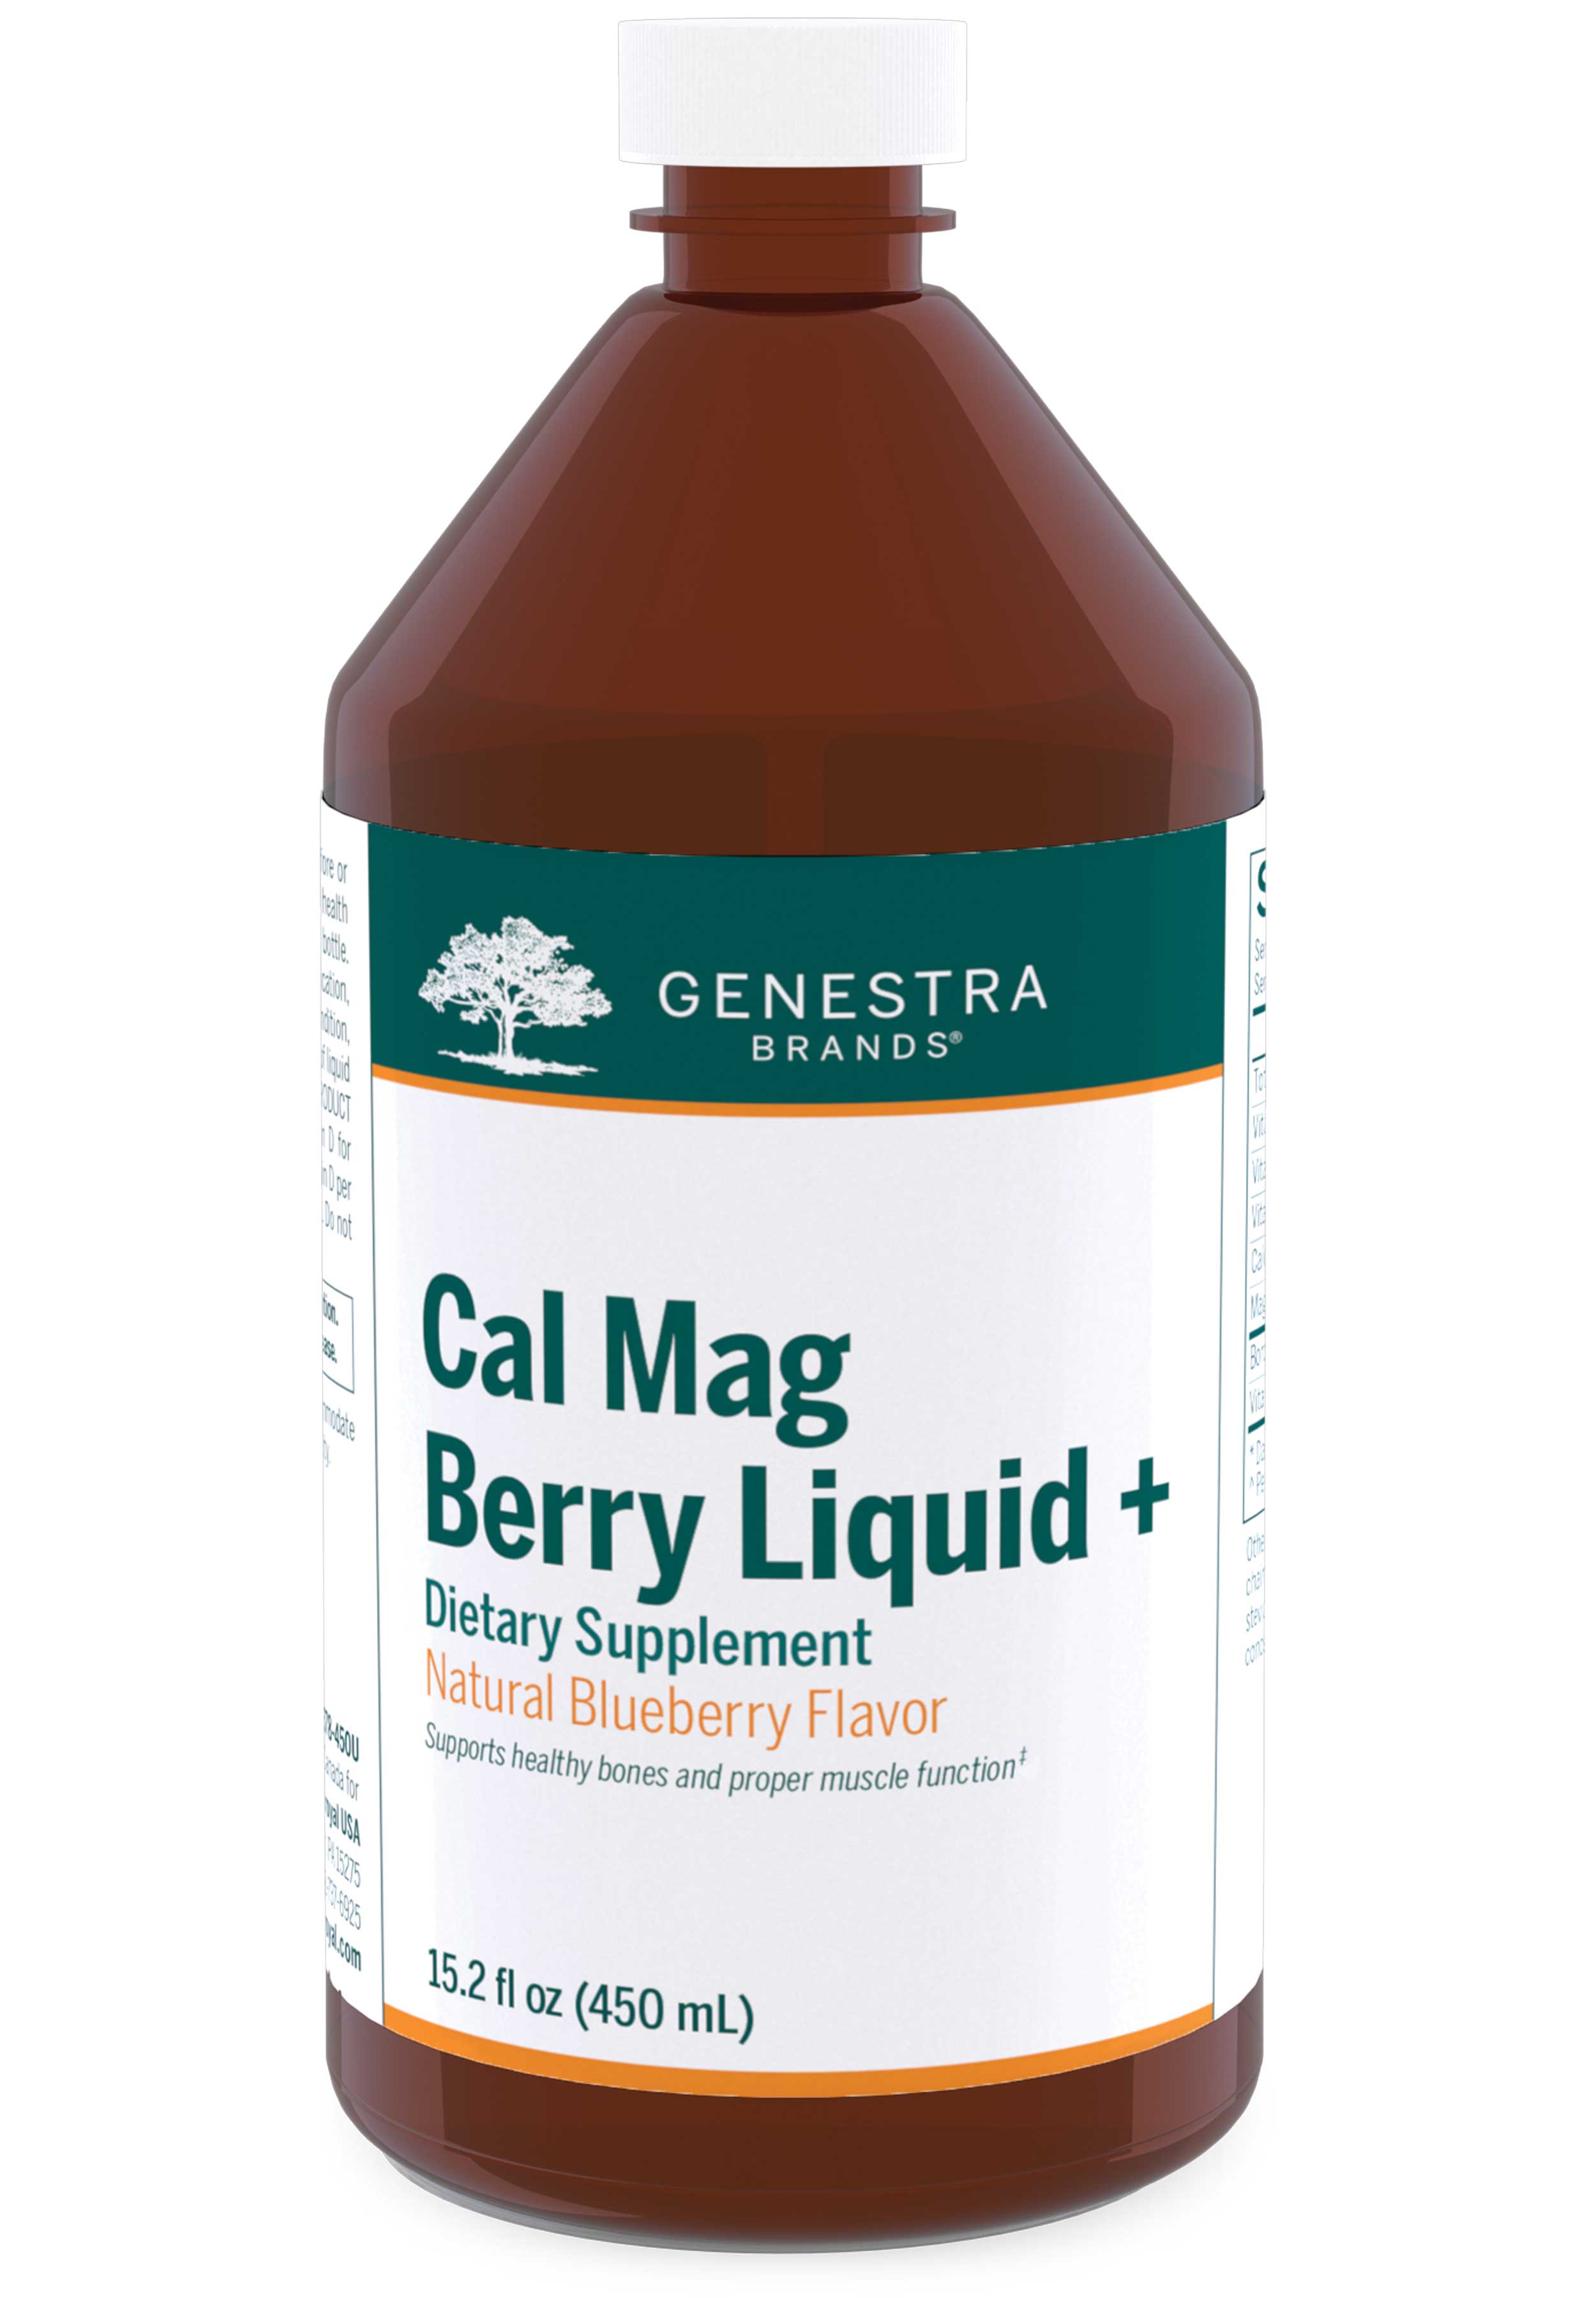 Genestra Brands Cal Mag Berry Liquid +